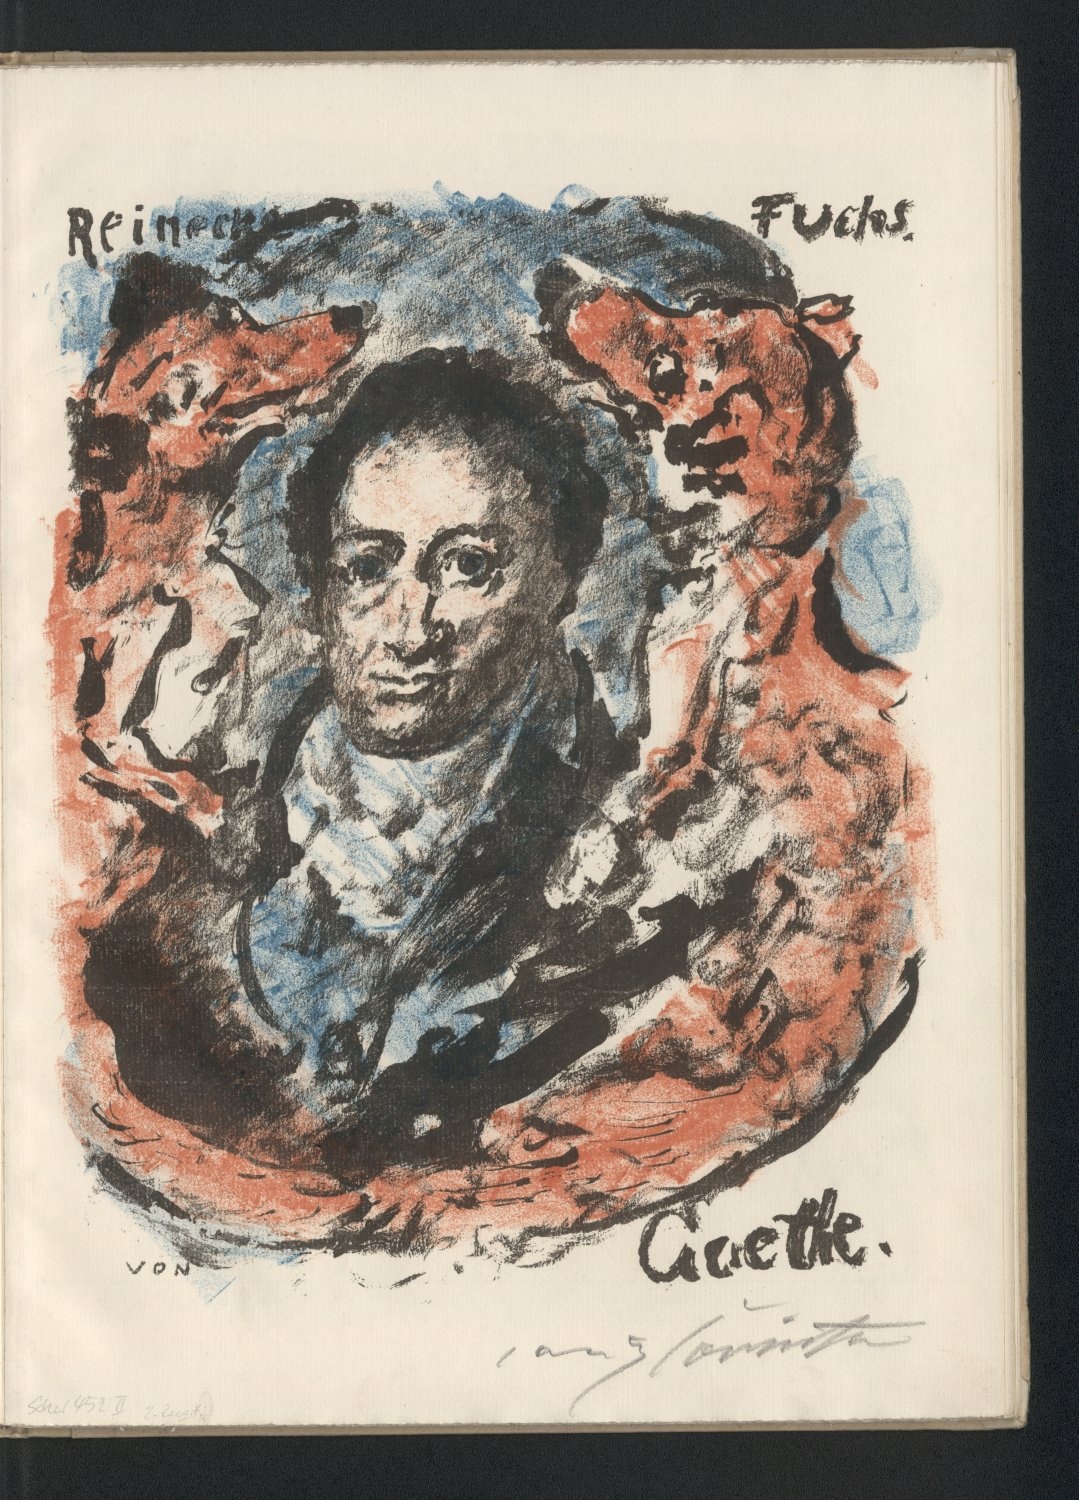 Goethe-Bildnis, von Füchsen gerahmt. Titelillustration zu Reineke Fuchs (Freies Deutsches Hochstift / Frankfurter Goethe-Museum CC BY-NC-SA)